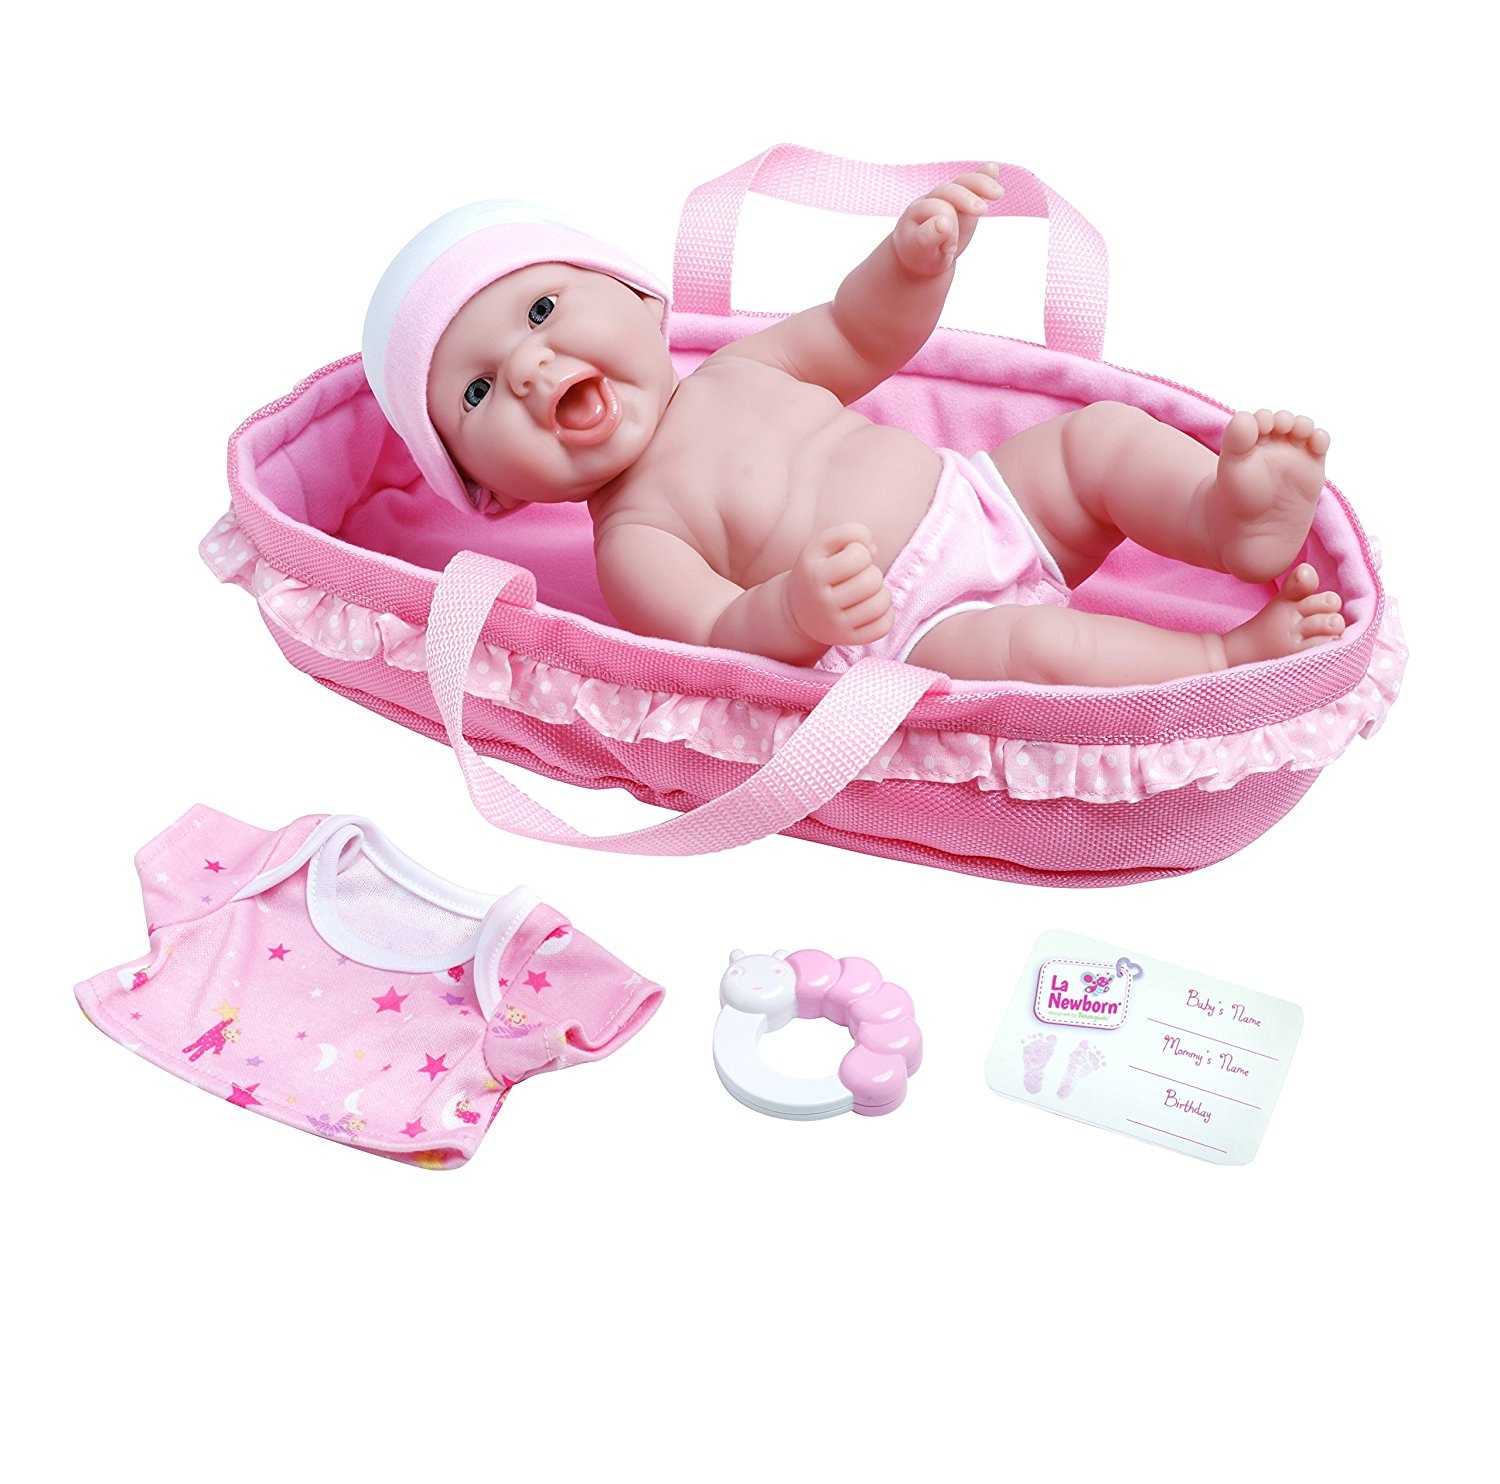 Búp bê trẻ sơ sinh Vinyl và nôi vải hồng phấn La Newborn Realistic Baby Doll Soft Basket Set